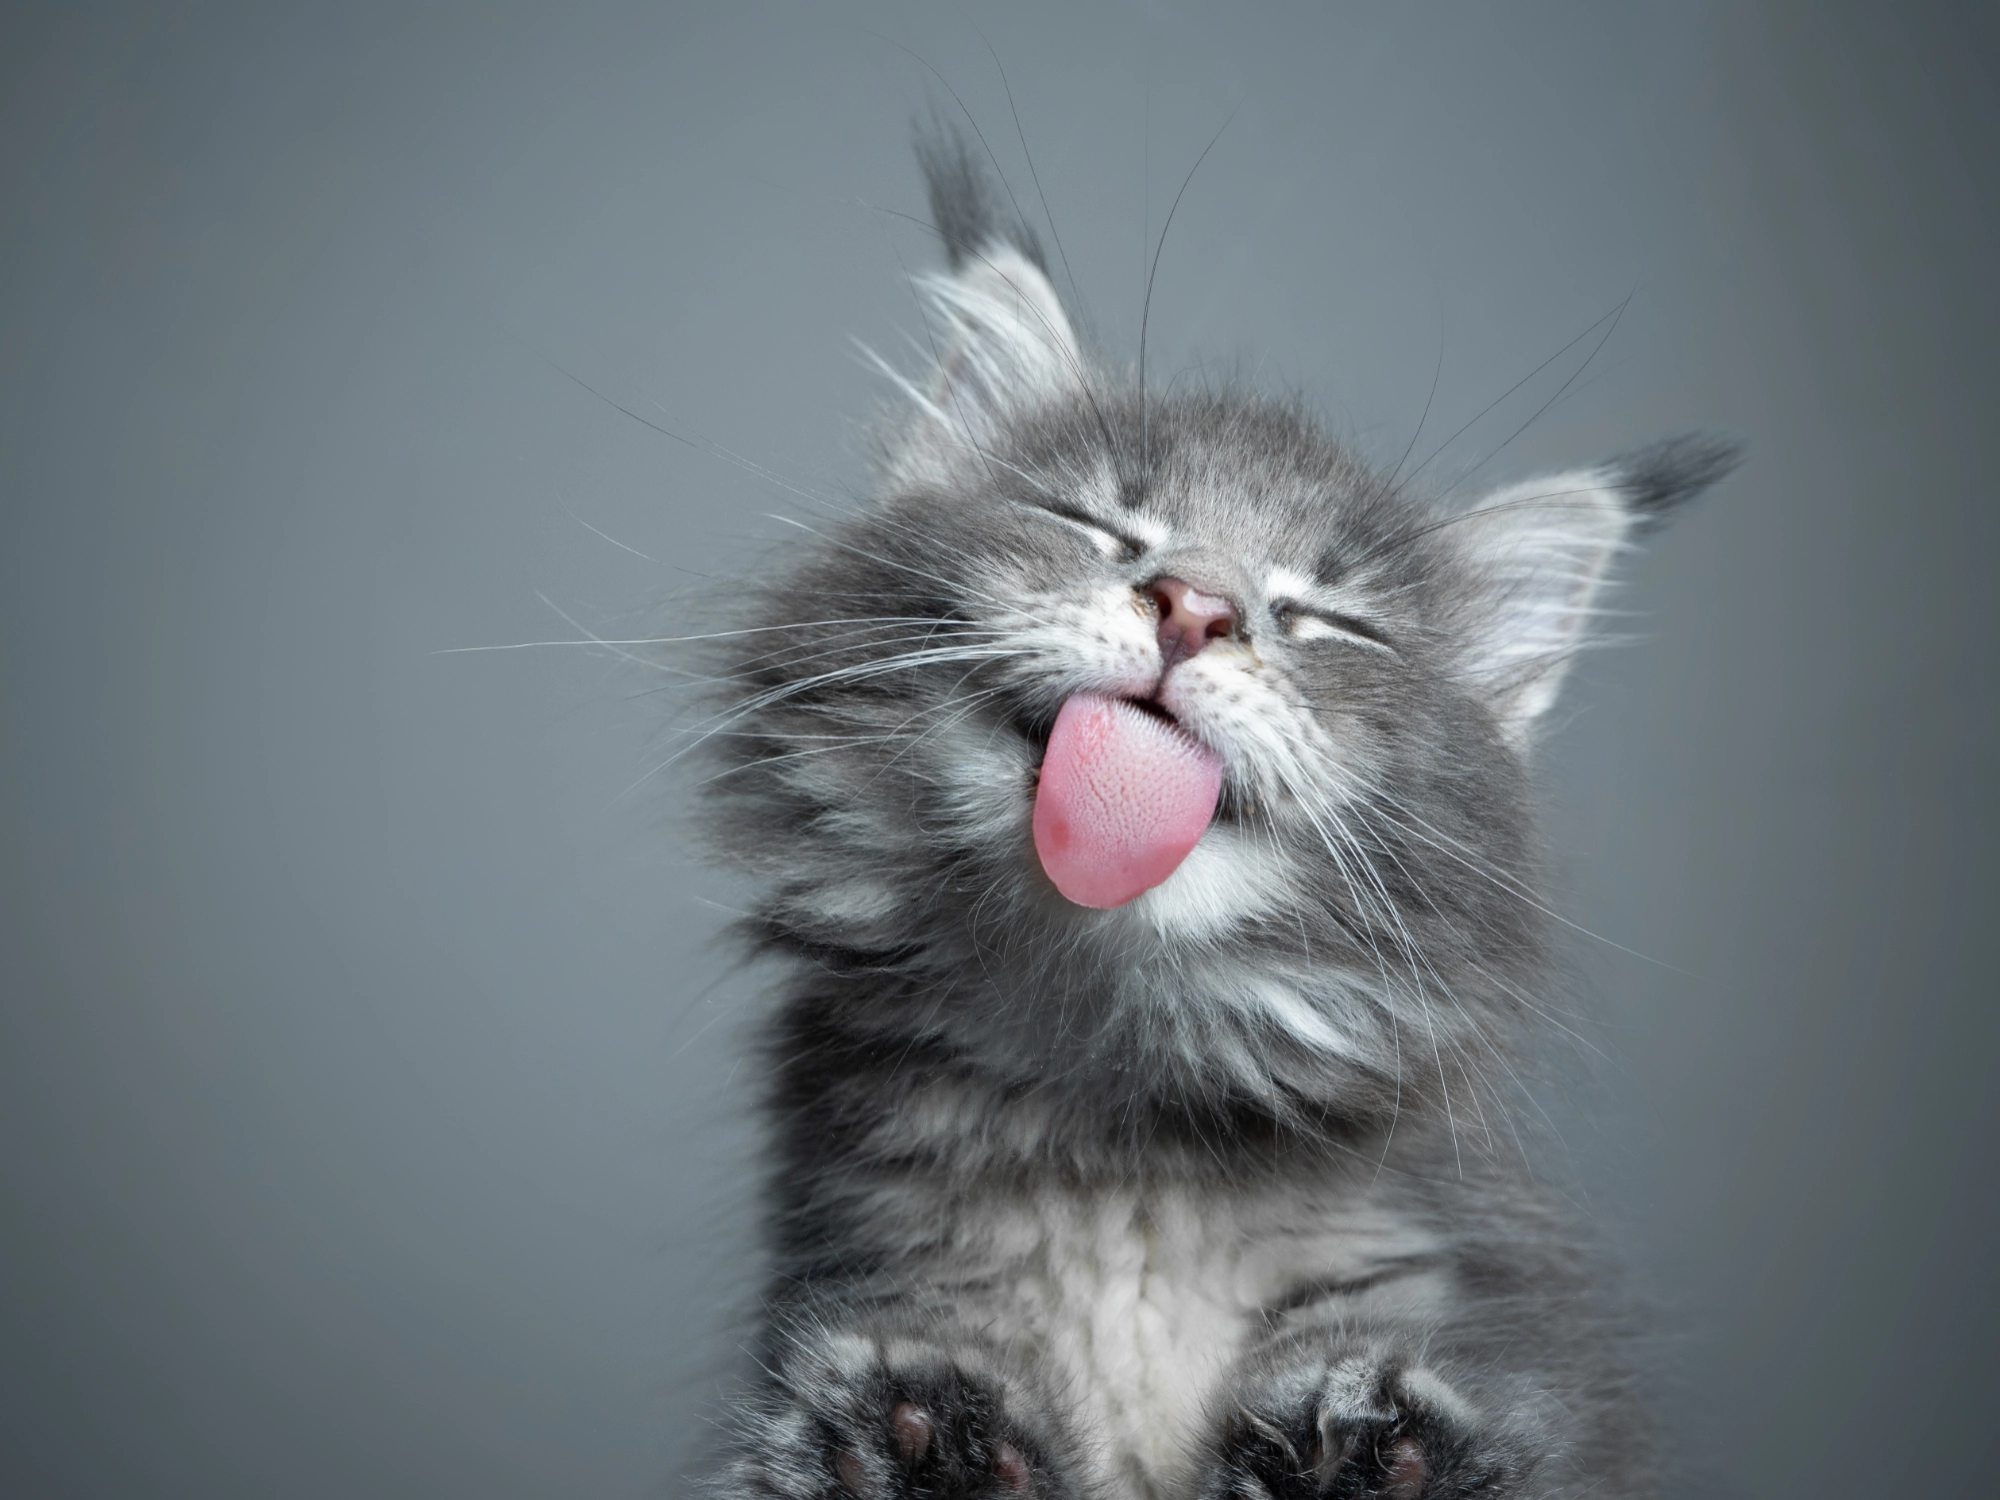 Voordelen van natvoer voor katten | Voskes